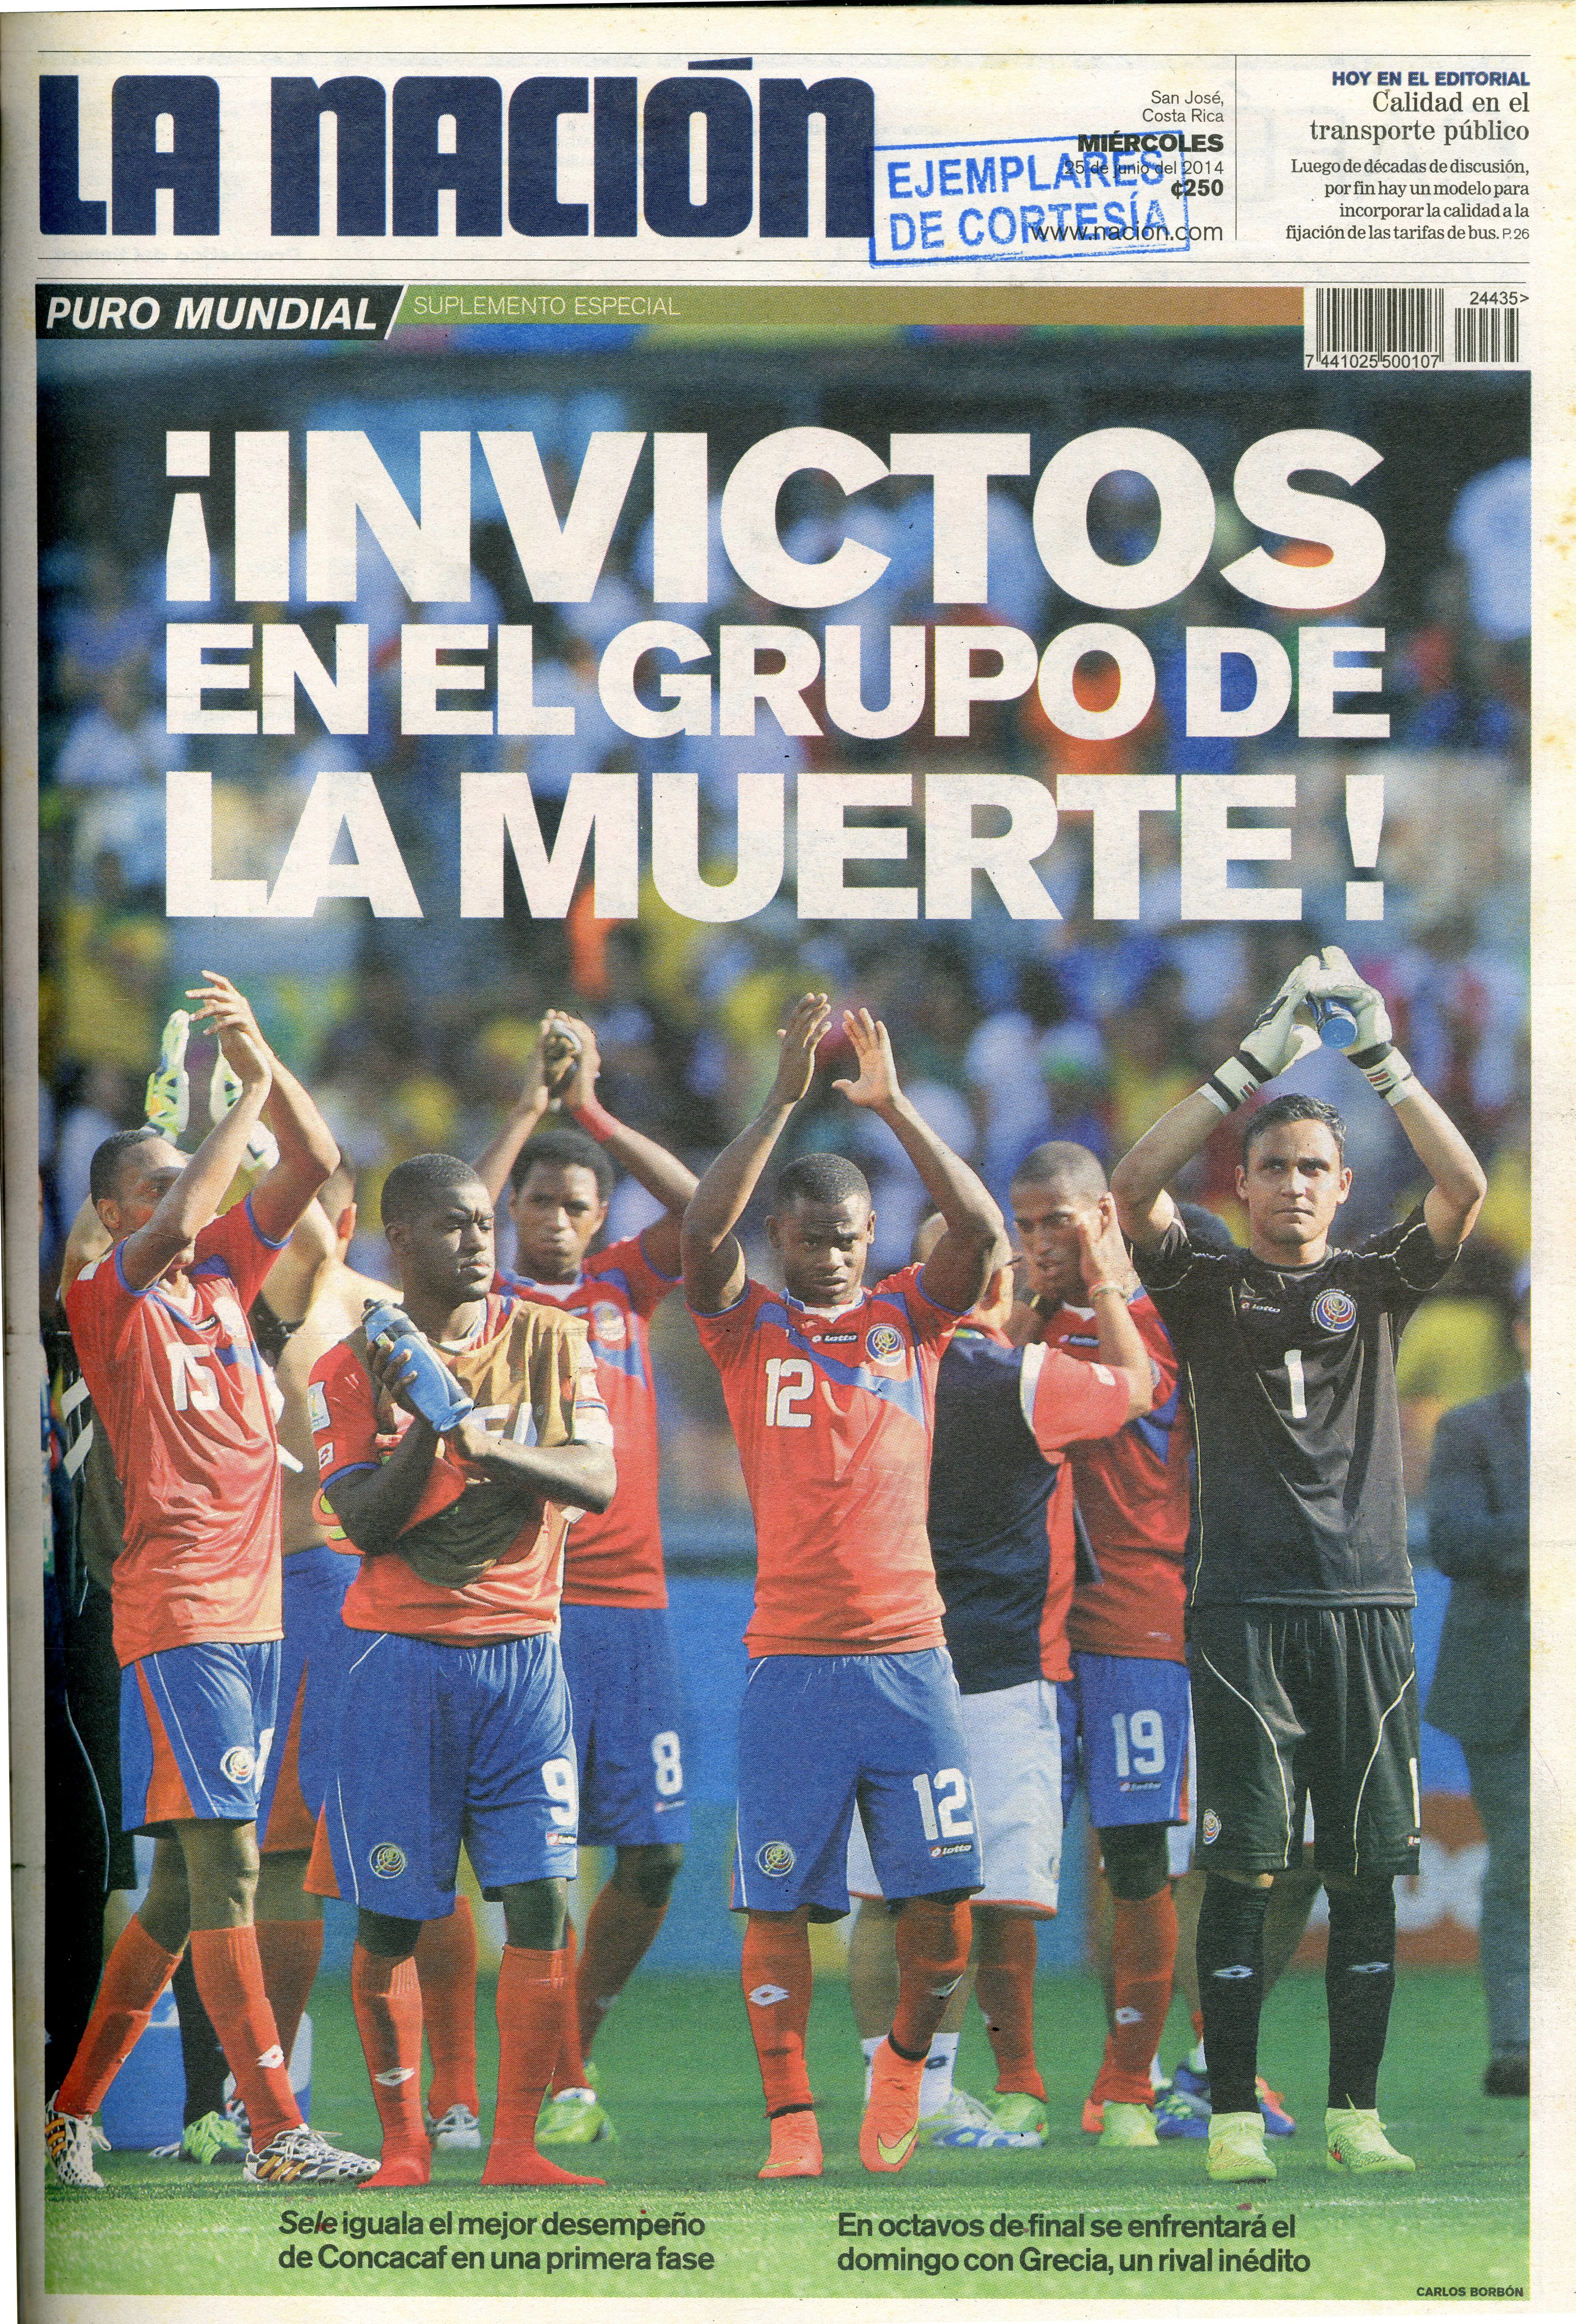 Esta fue otra histórica portada de 'La Nación', reseñando lo que hacían los héroes de la Selección de Costa Rica en el Mundial de Brasil 2014.